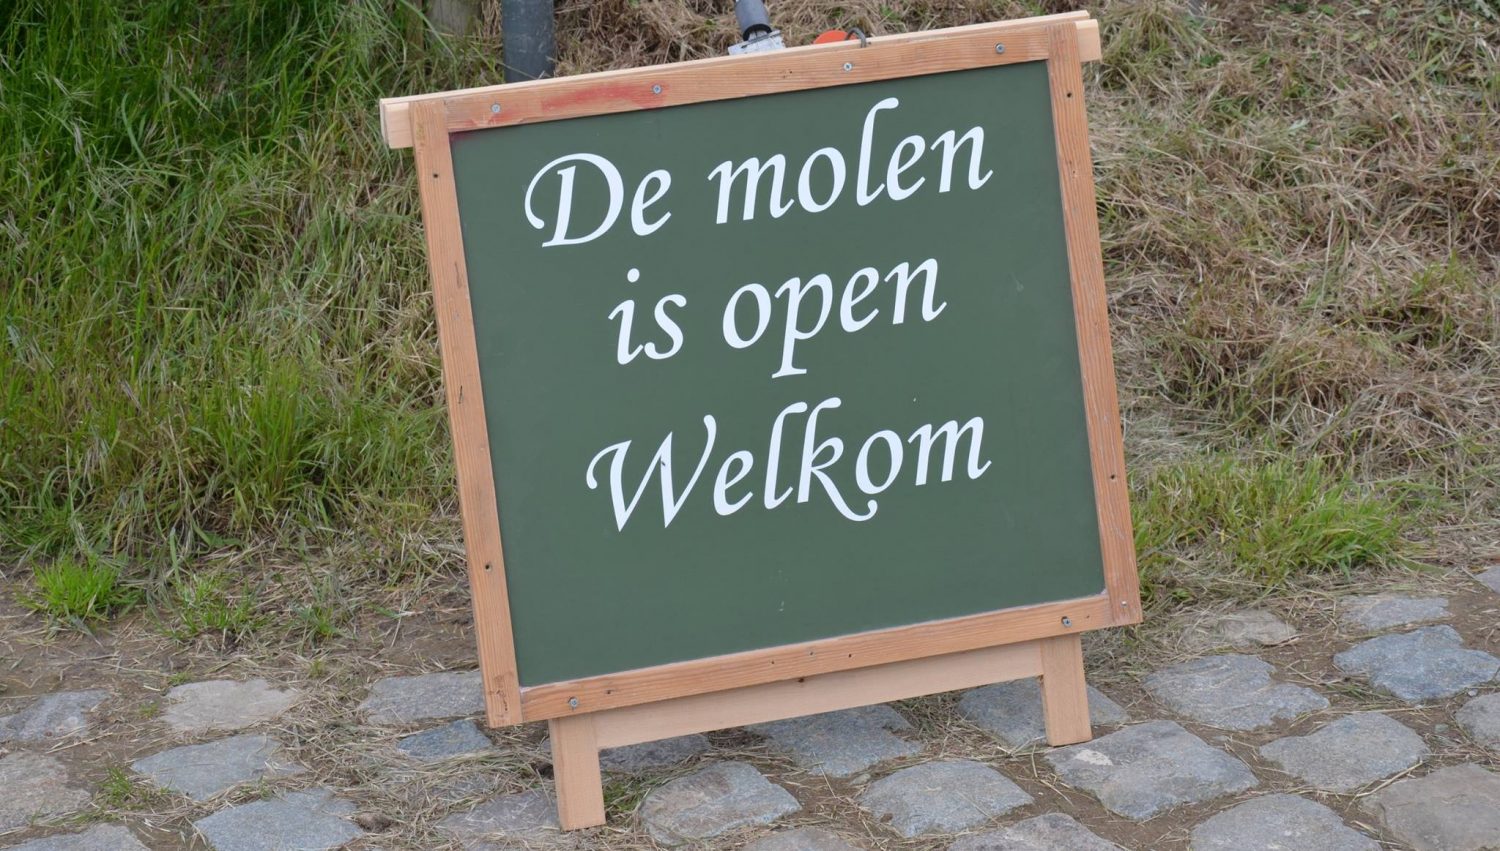 Oost-Vlaamse Molens